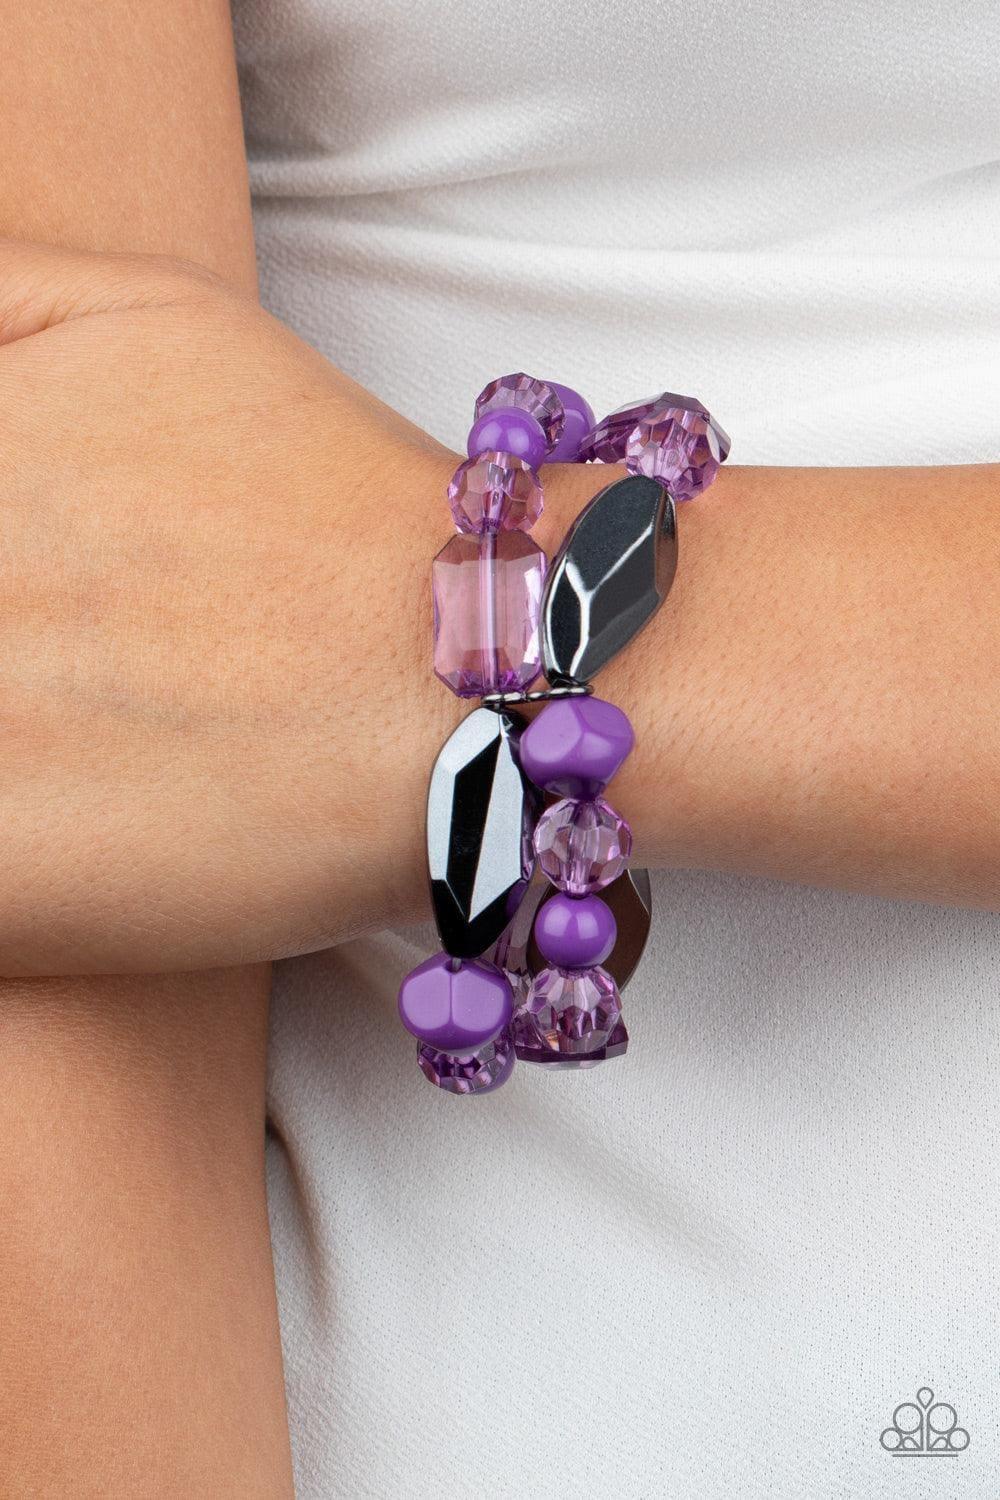 Paparazzi Accessories - Rockin Rock Candy - Purple Bracelet - Bling by JessieK